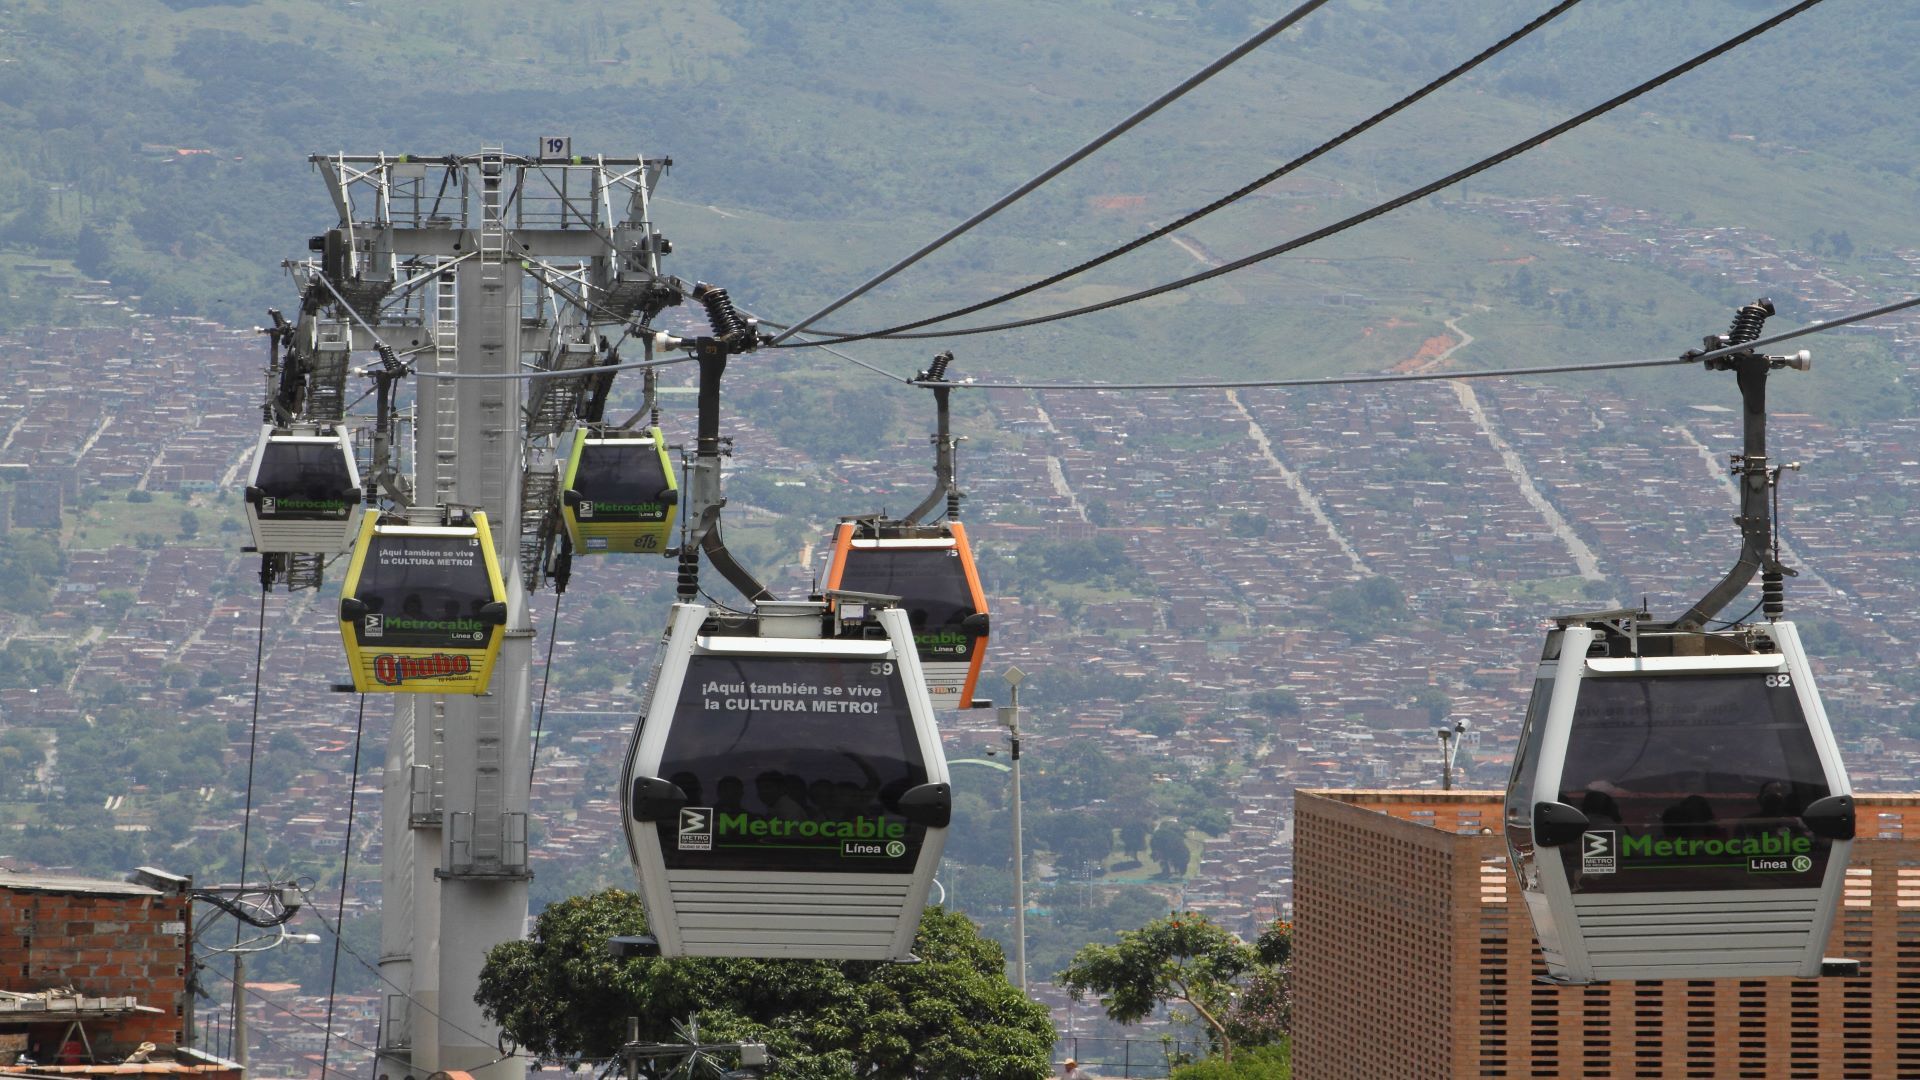 Transfers in Medellin